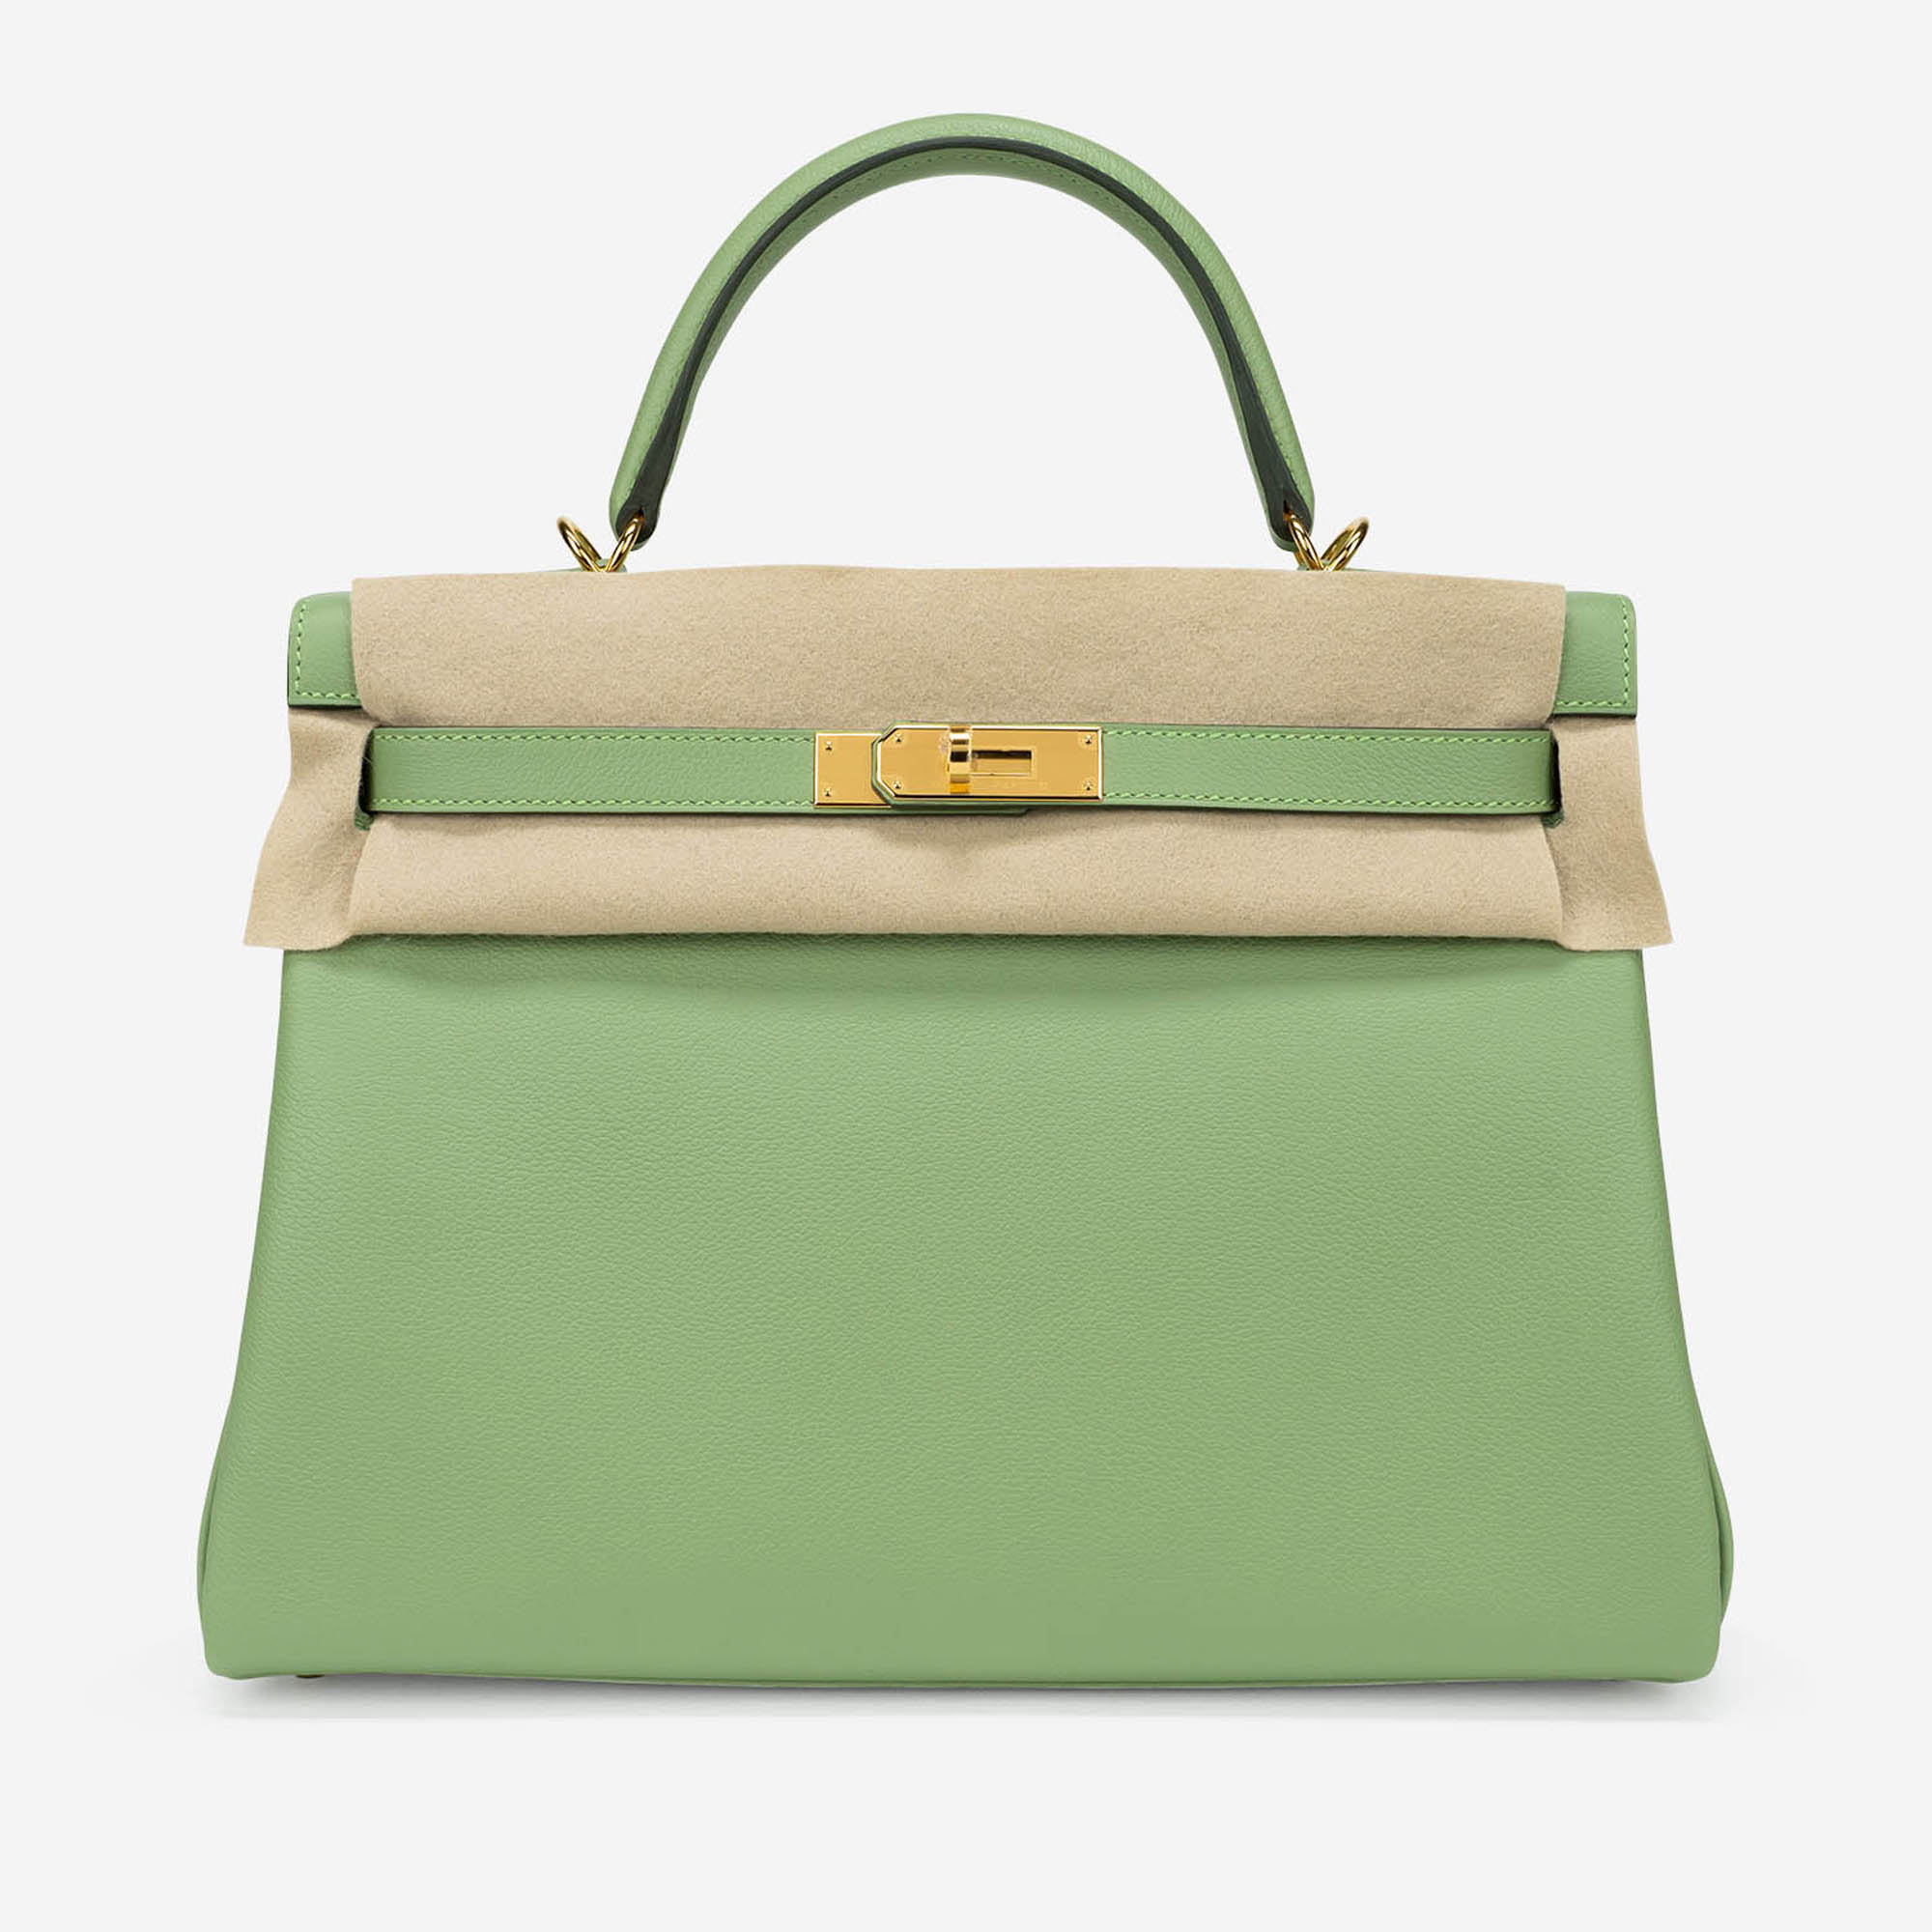 Sac Hermès d'occasion Kelly 32 Evercolor Vert Criquet Green | Vendez votre sac de créateur sur Saclab.com